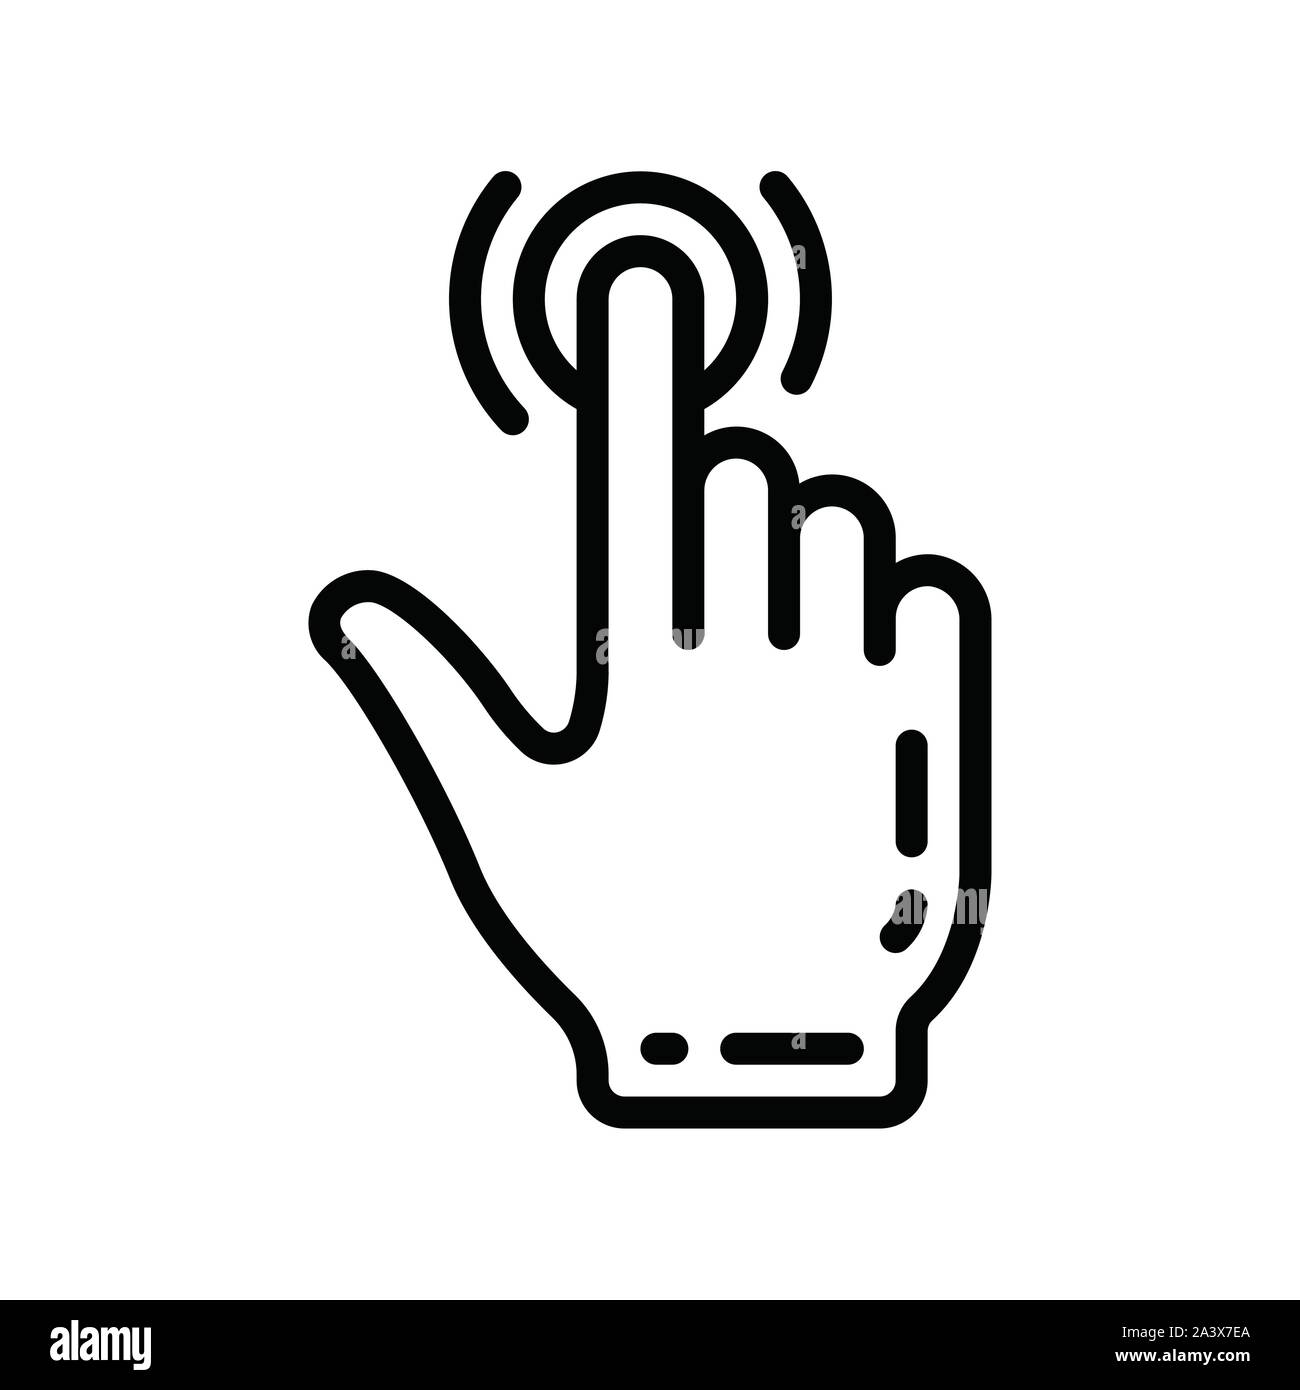 Biometrische Stanzen, Tiefziehen, Gesenkschmieden, Stanzen, Lochen, punchout, Finger ein Symbol Vektor, Finger in biometrischen Symbol Stock Vektor